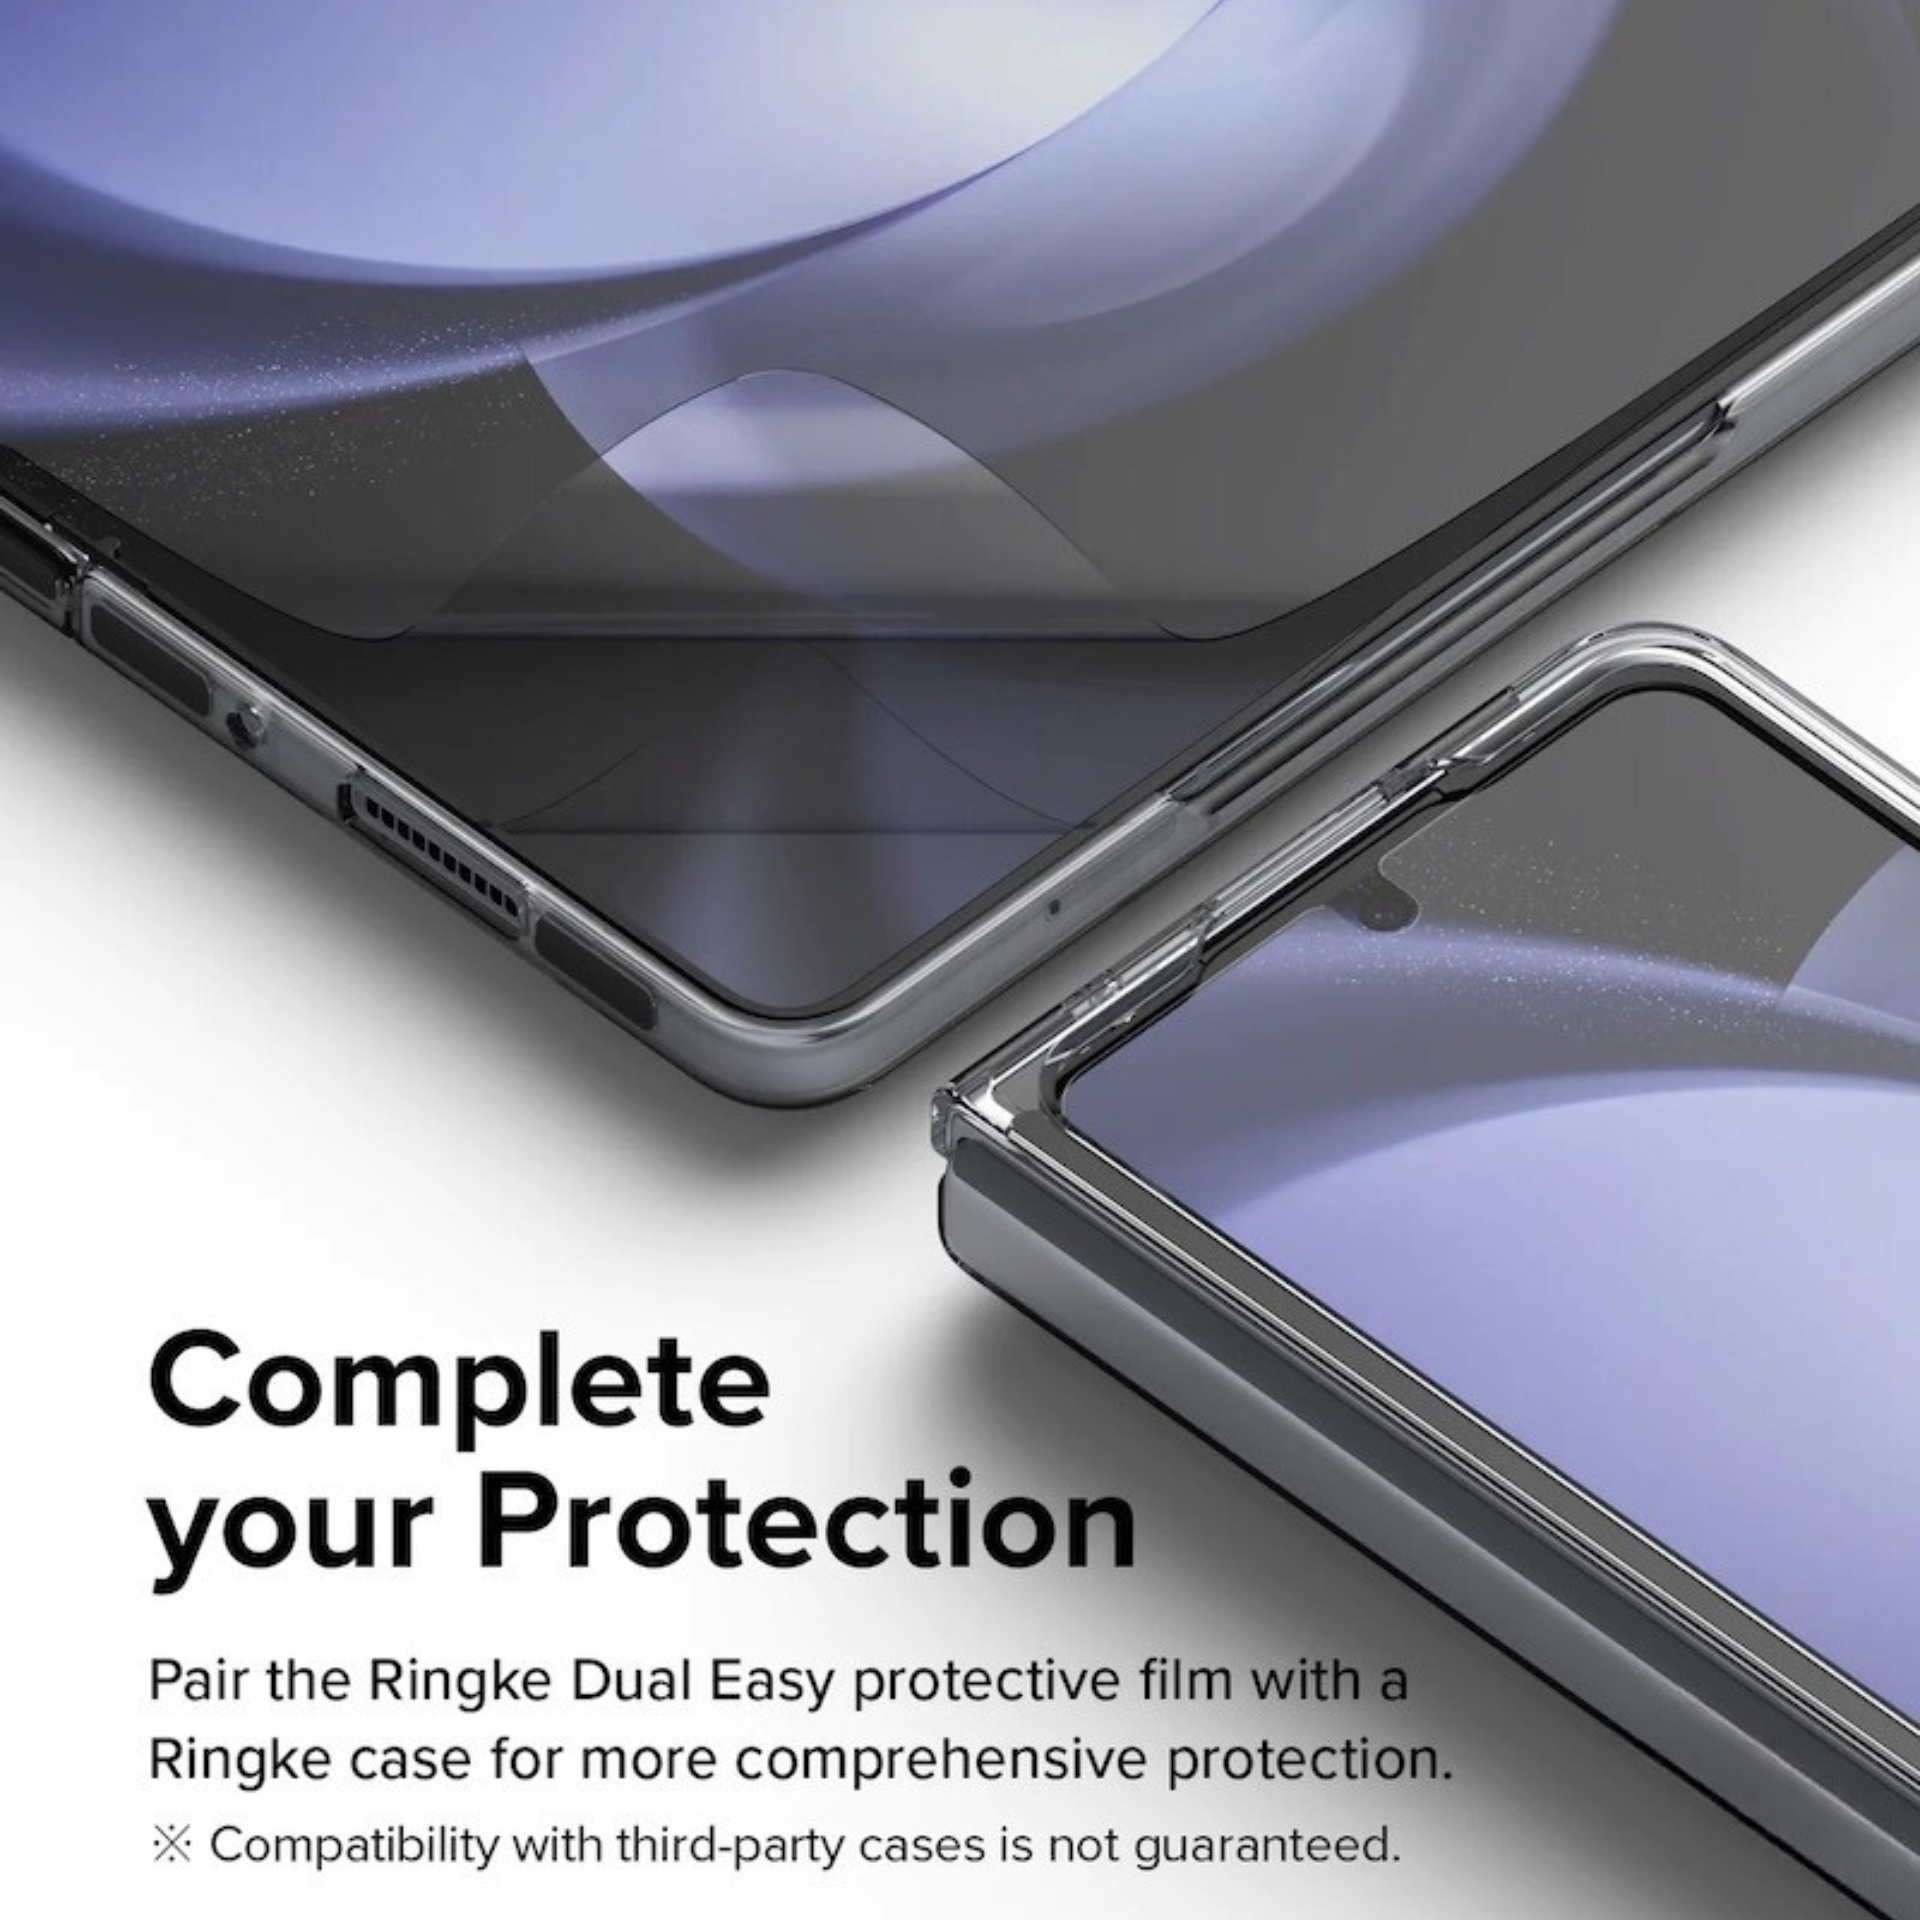 Bộ Dán Dẻo Ringke Dual Easy Film Dành Cho Samsung Galaxy Z Fold 5 5G, 1 Mặt Trong, 1 Mặt Ngoài - Hàng Chính Hãng